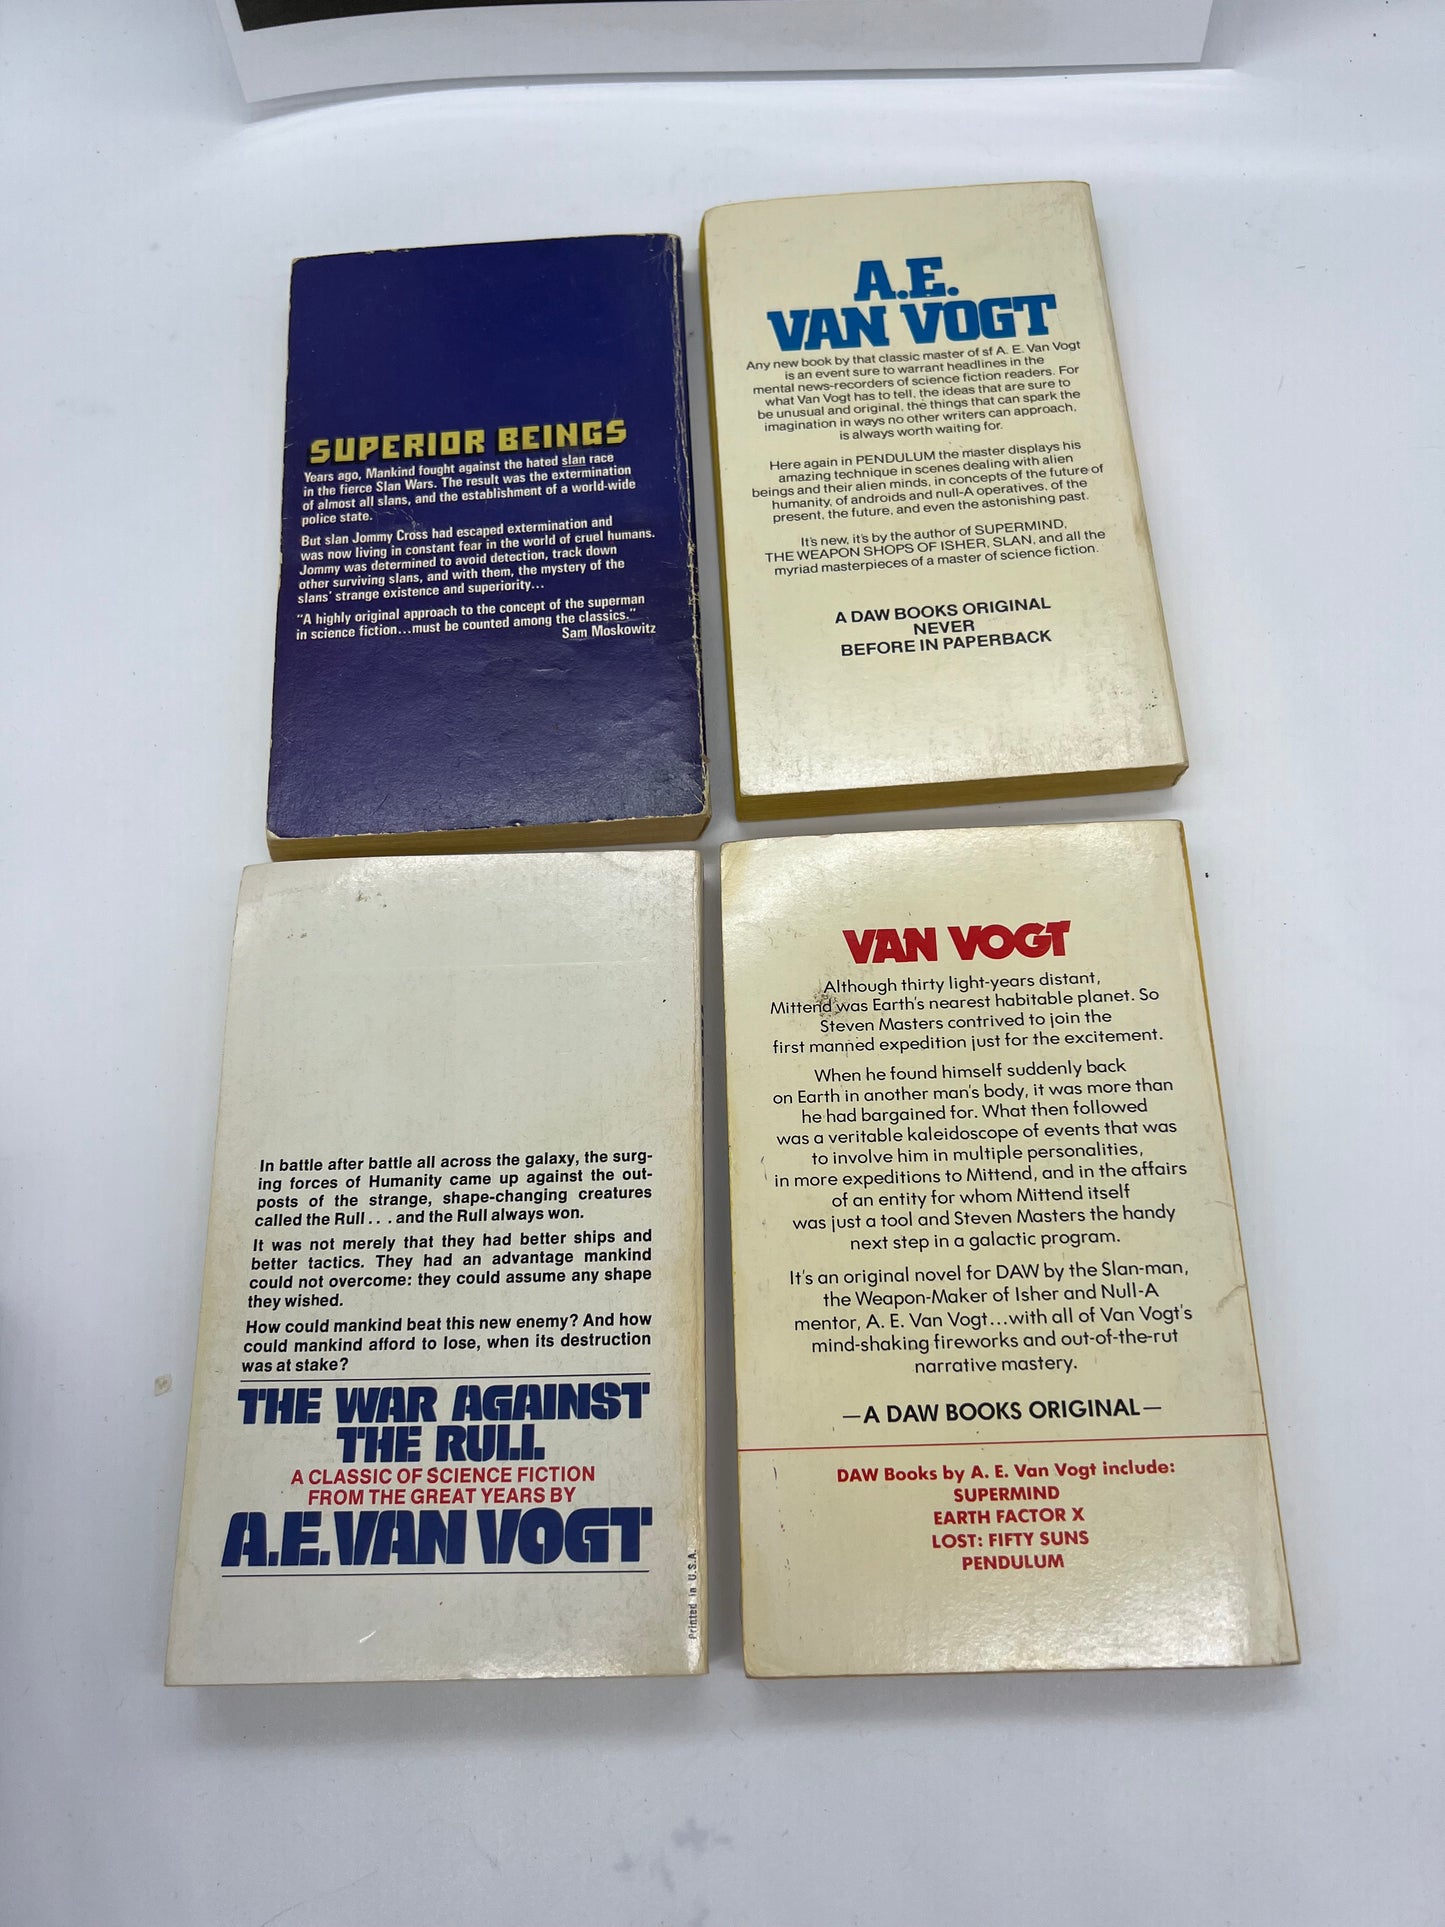 Lot of 4 A.E. Van Vogt Books